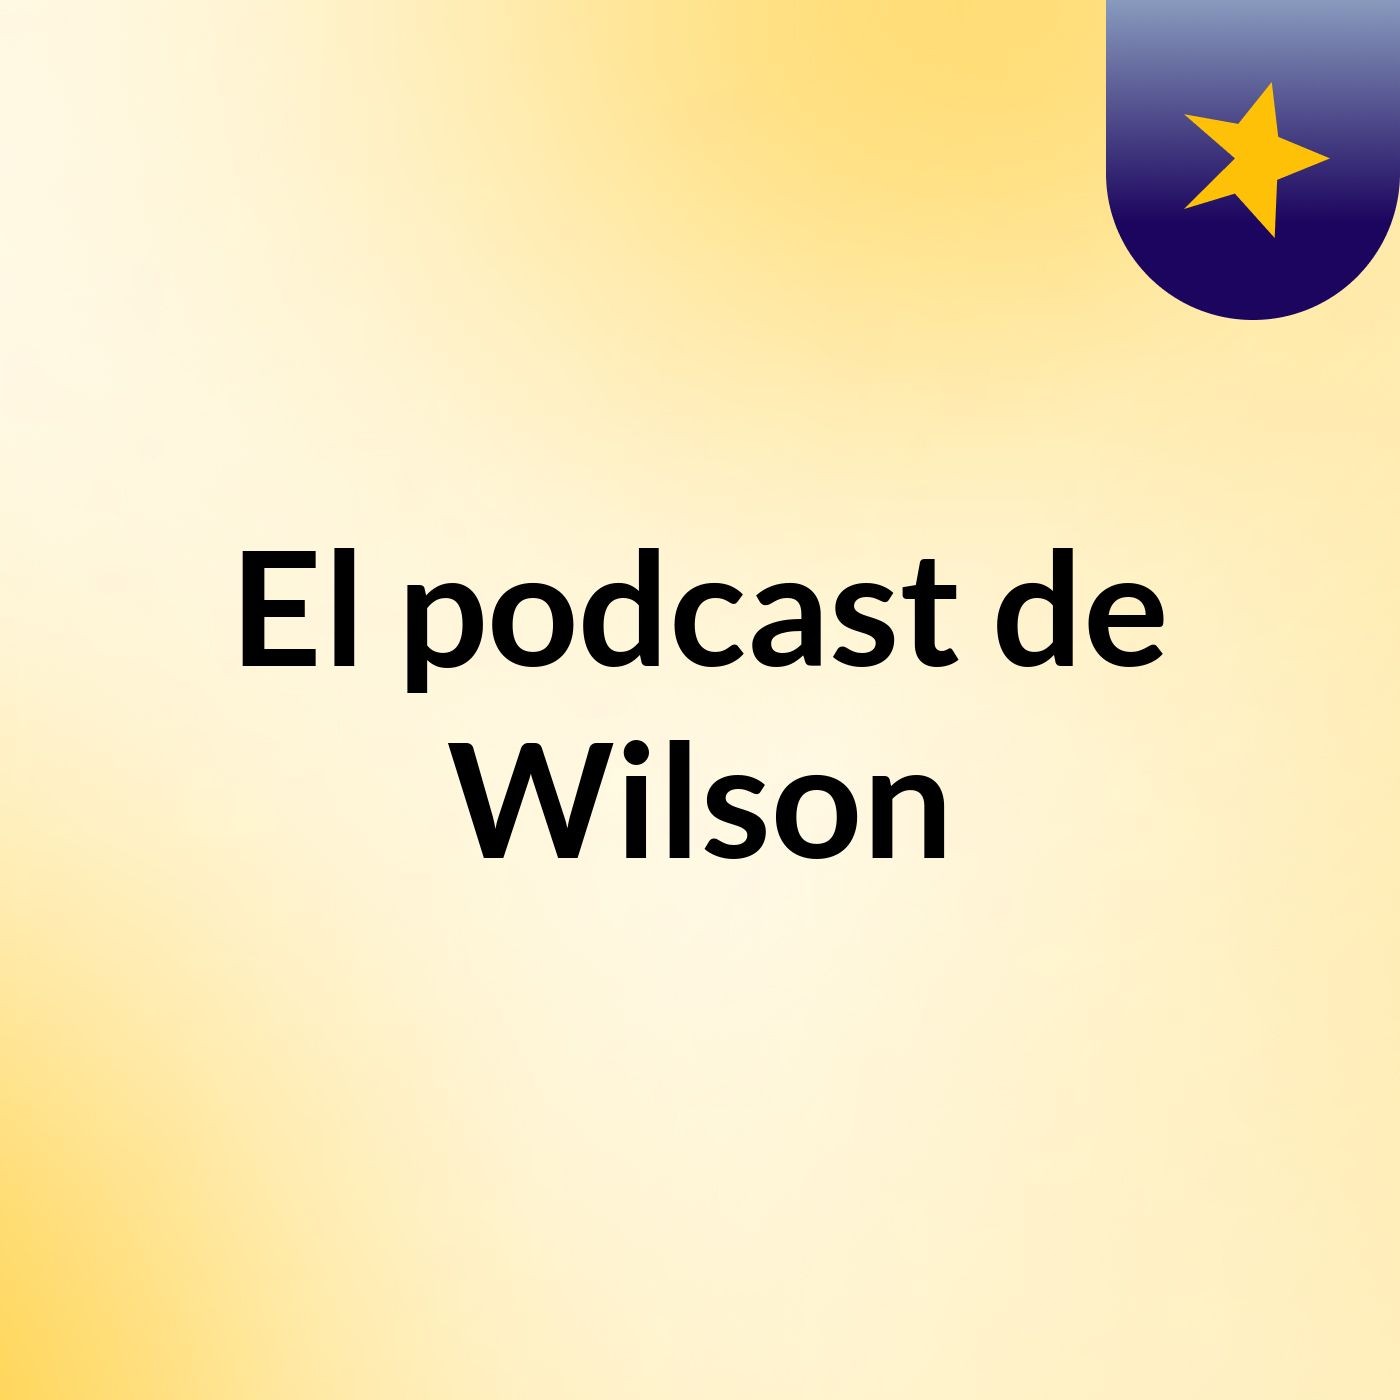 El podcast de Wilson